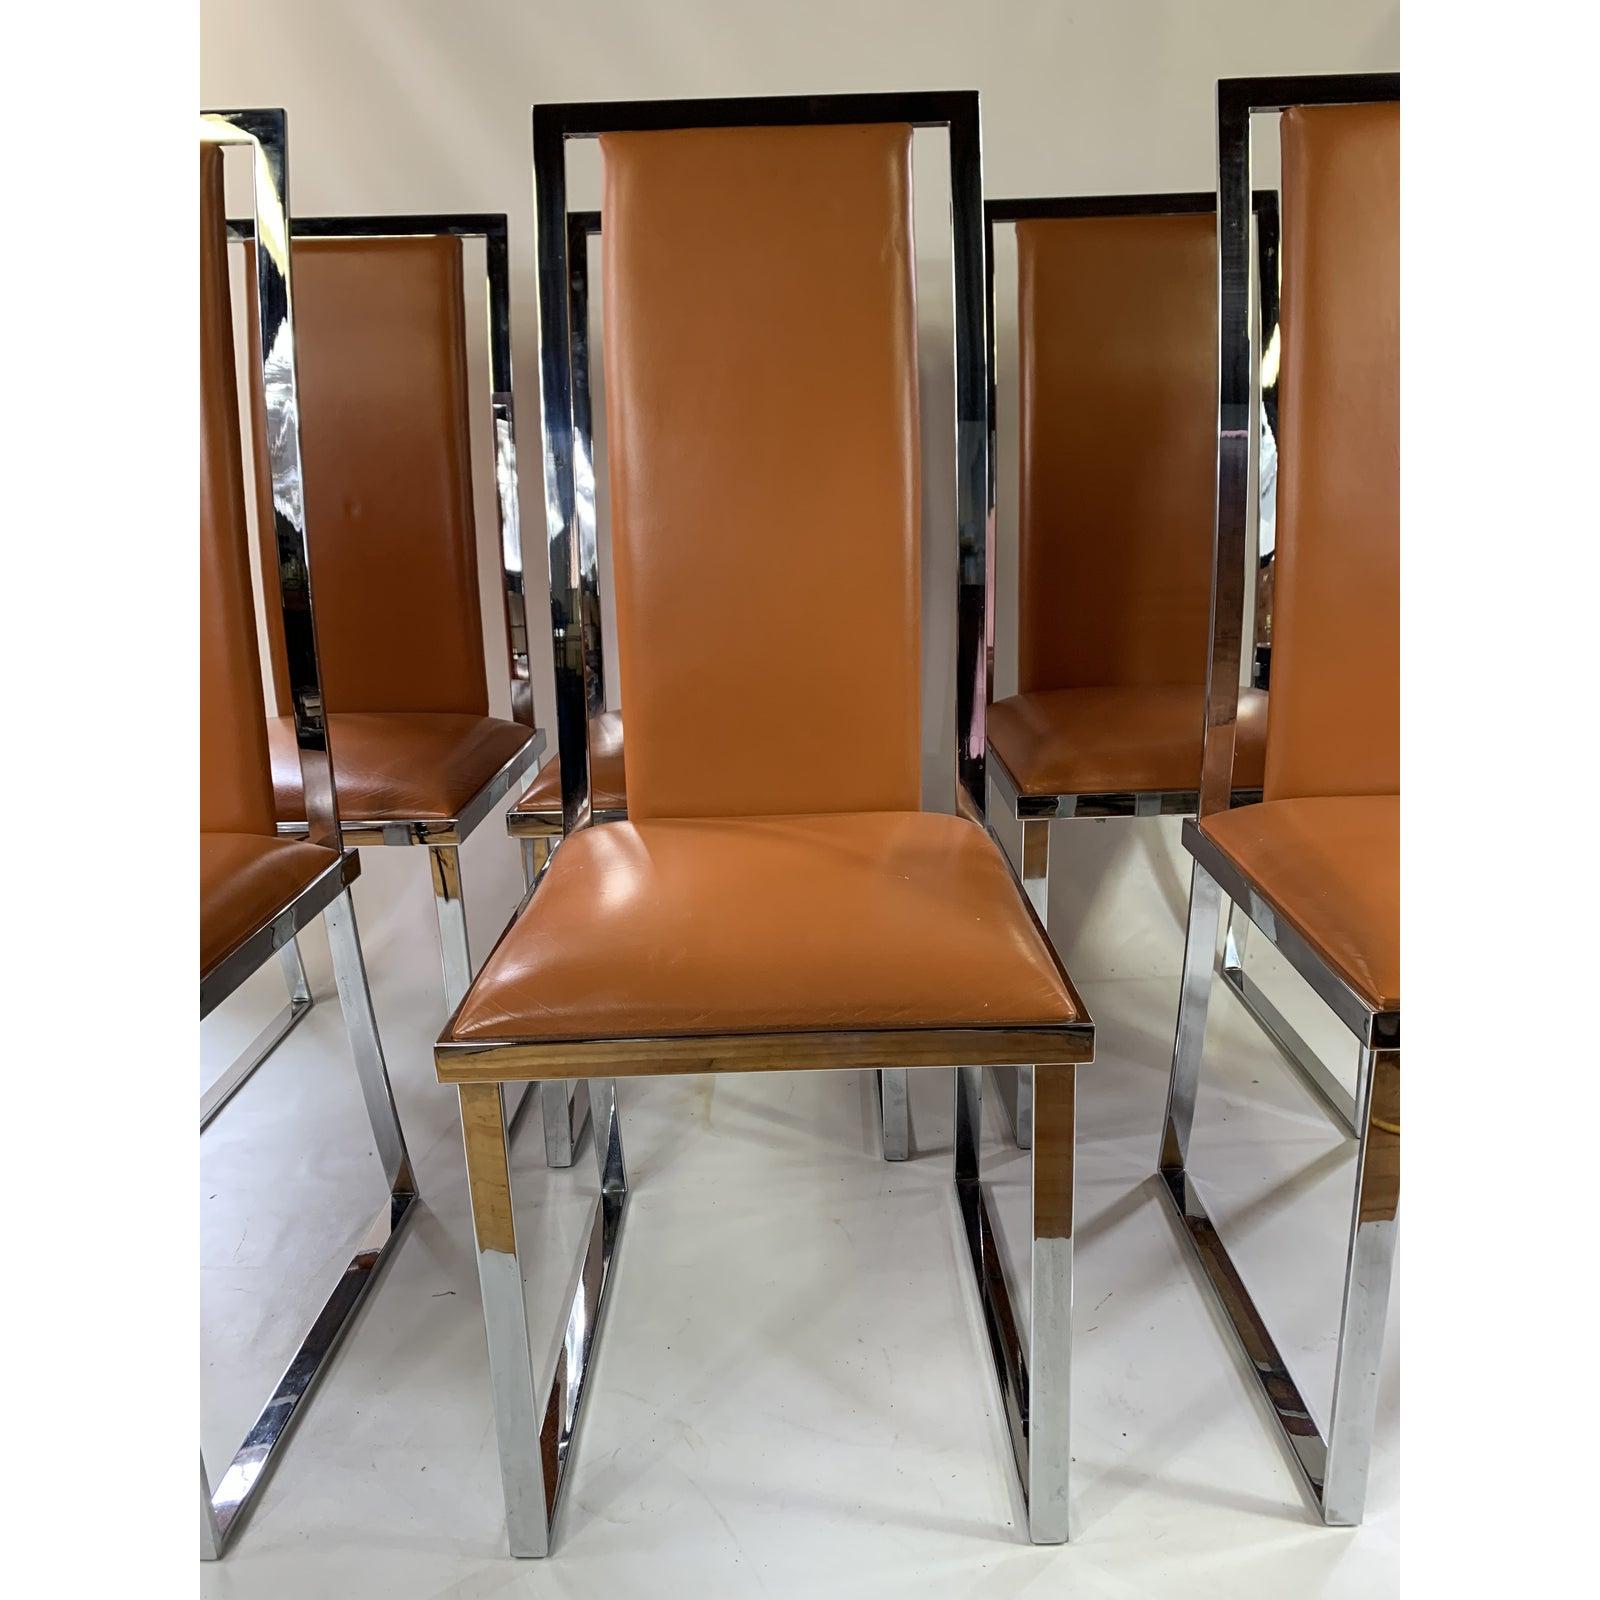 Très bel ensemble de chaises en chrome et cuir des années 1970 de très bonne facture dans le style de Milo baughman.